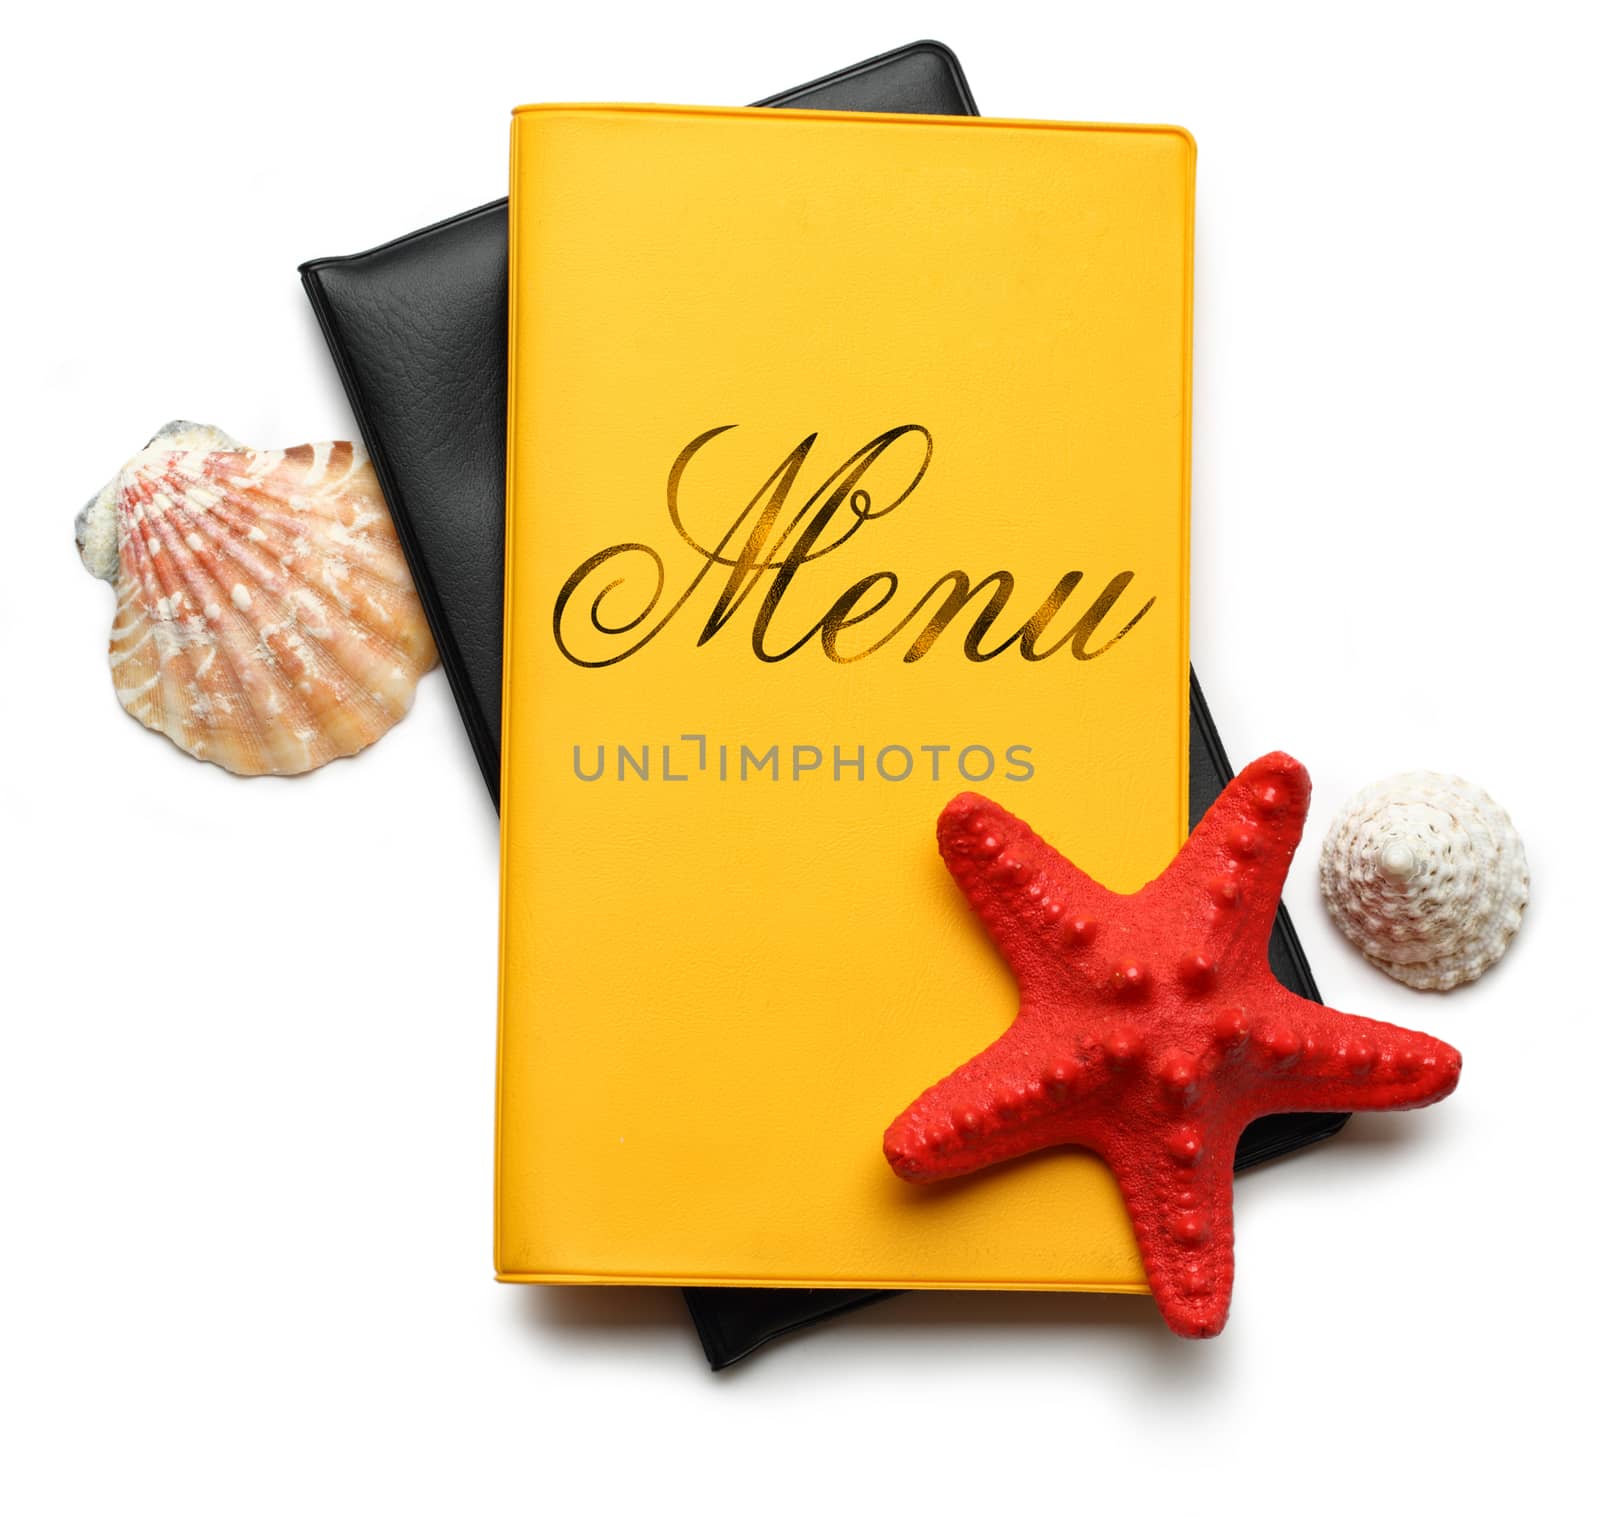 Seastar and seashells on menu book